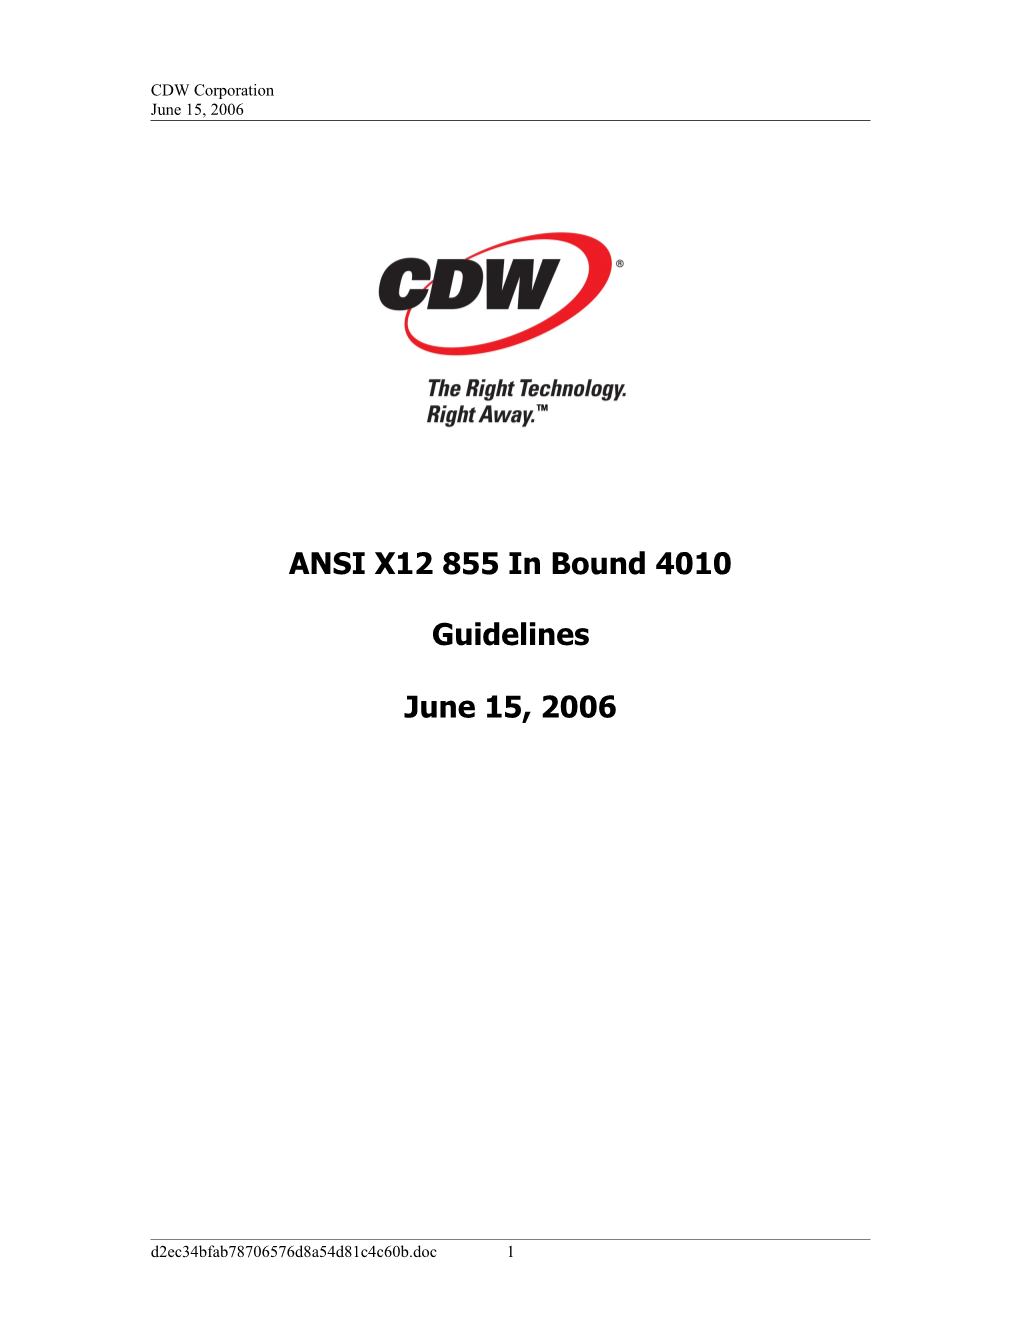 ANSI X12 855 in Bound 4010